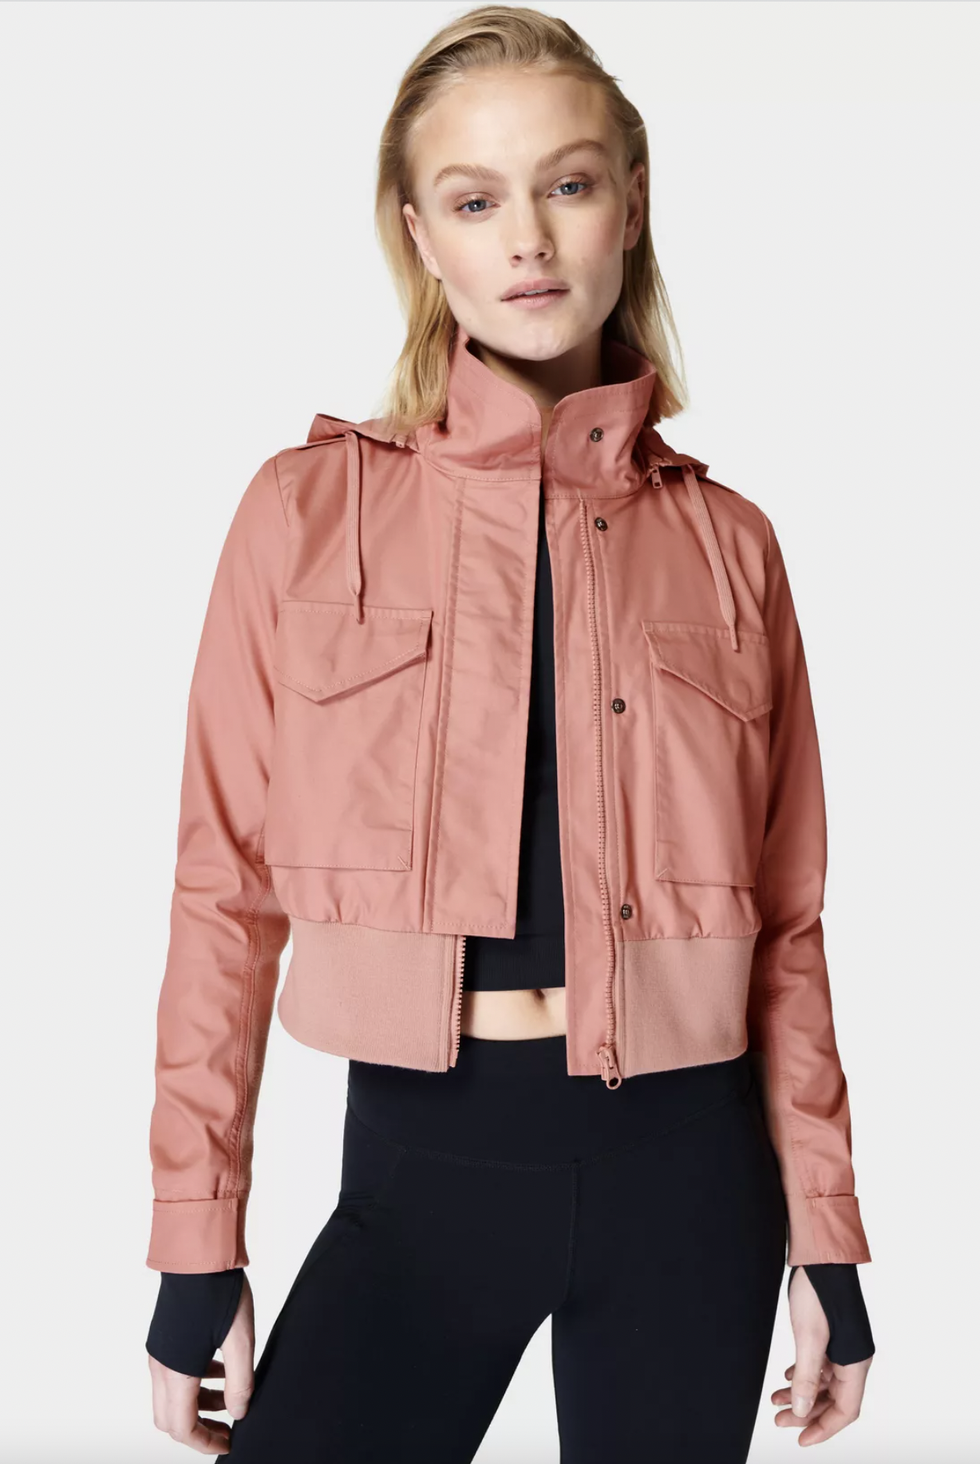 Women's Mid-Season Jackets & Coats, Fall & Spring